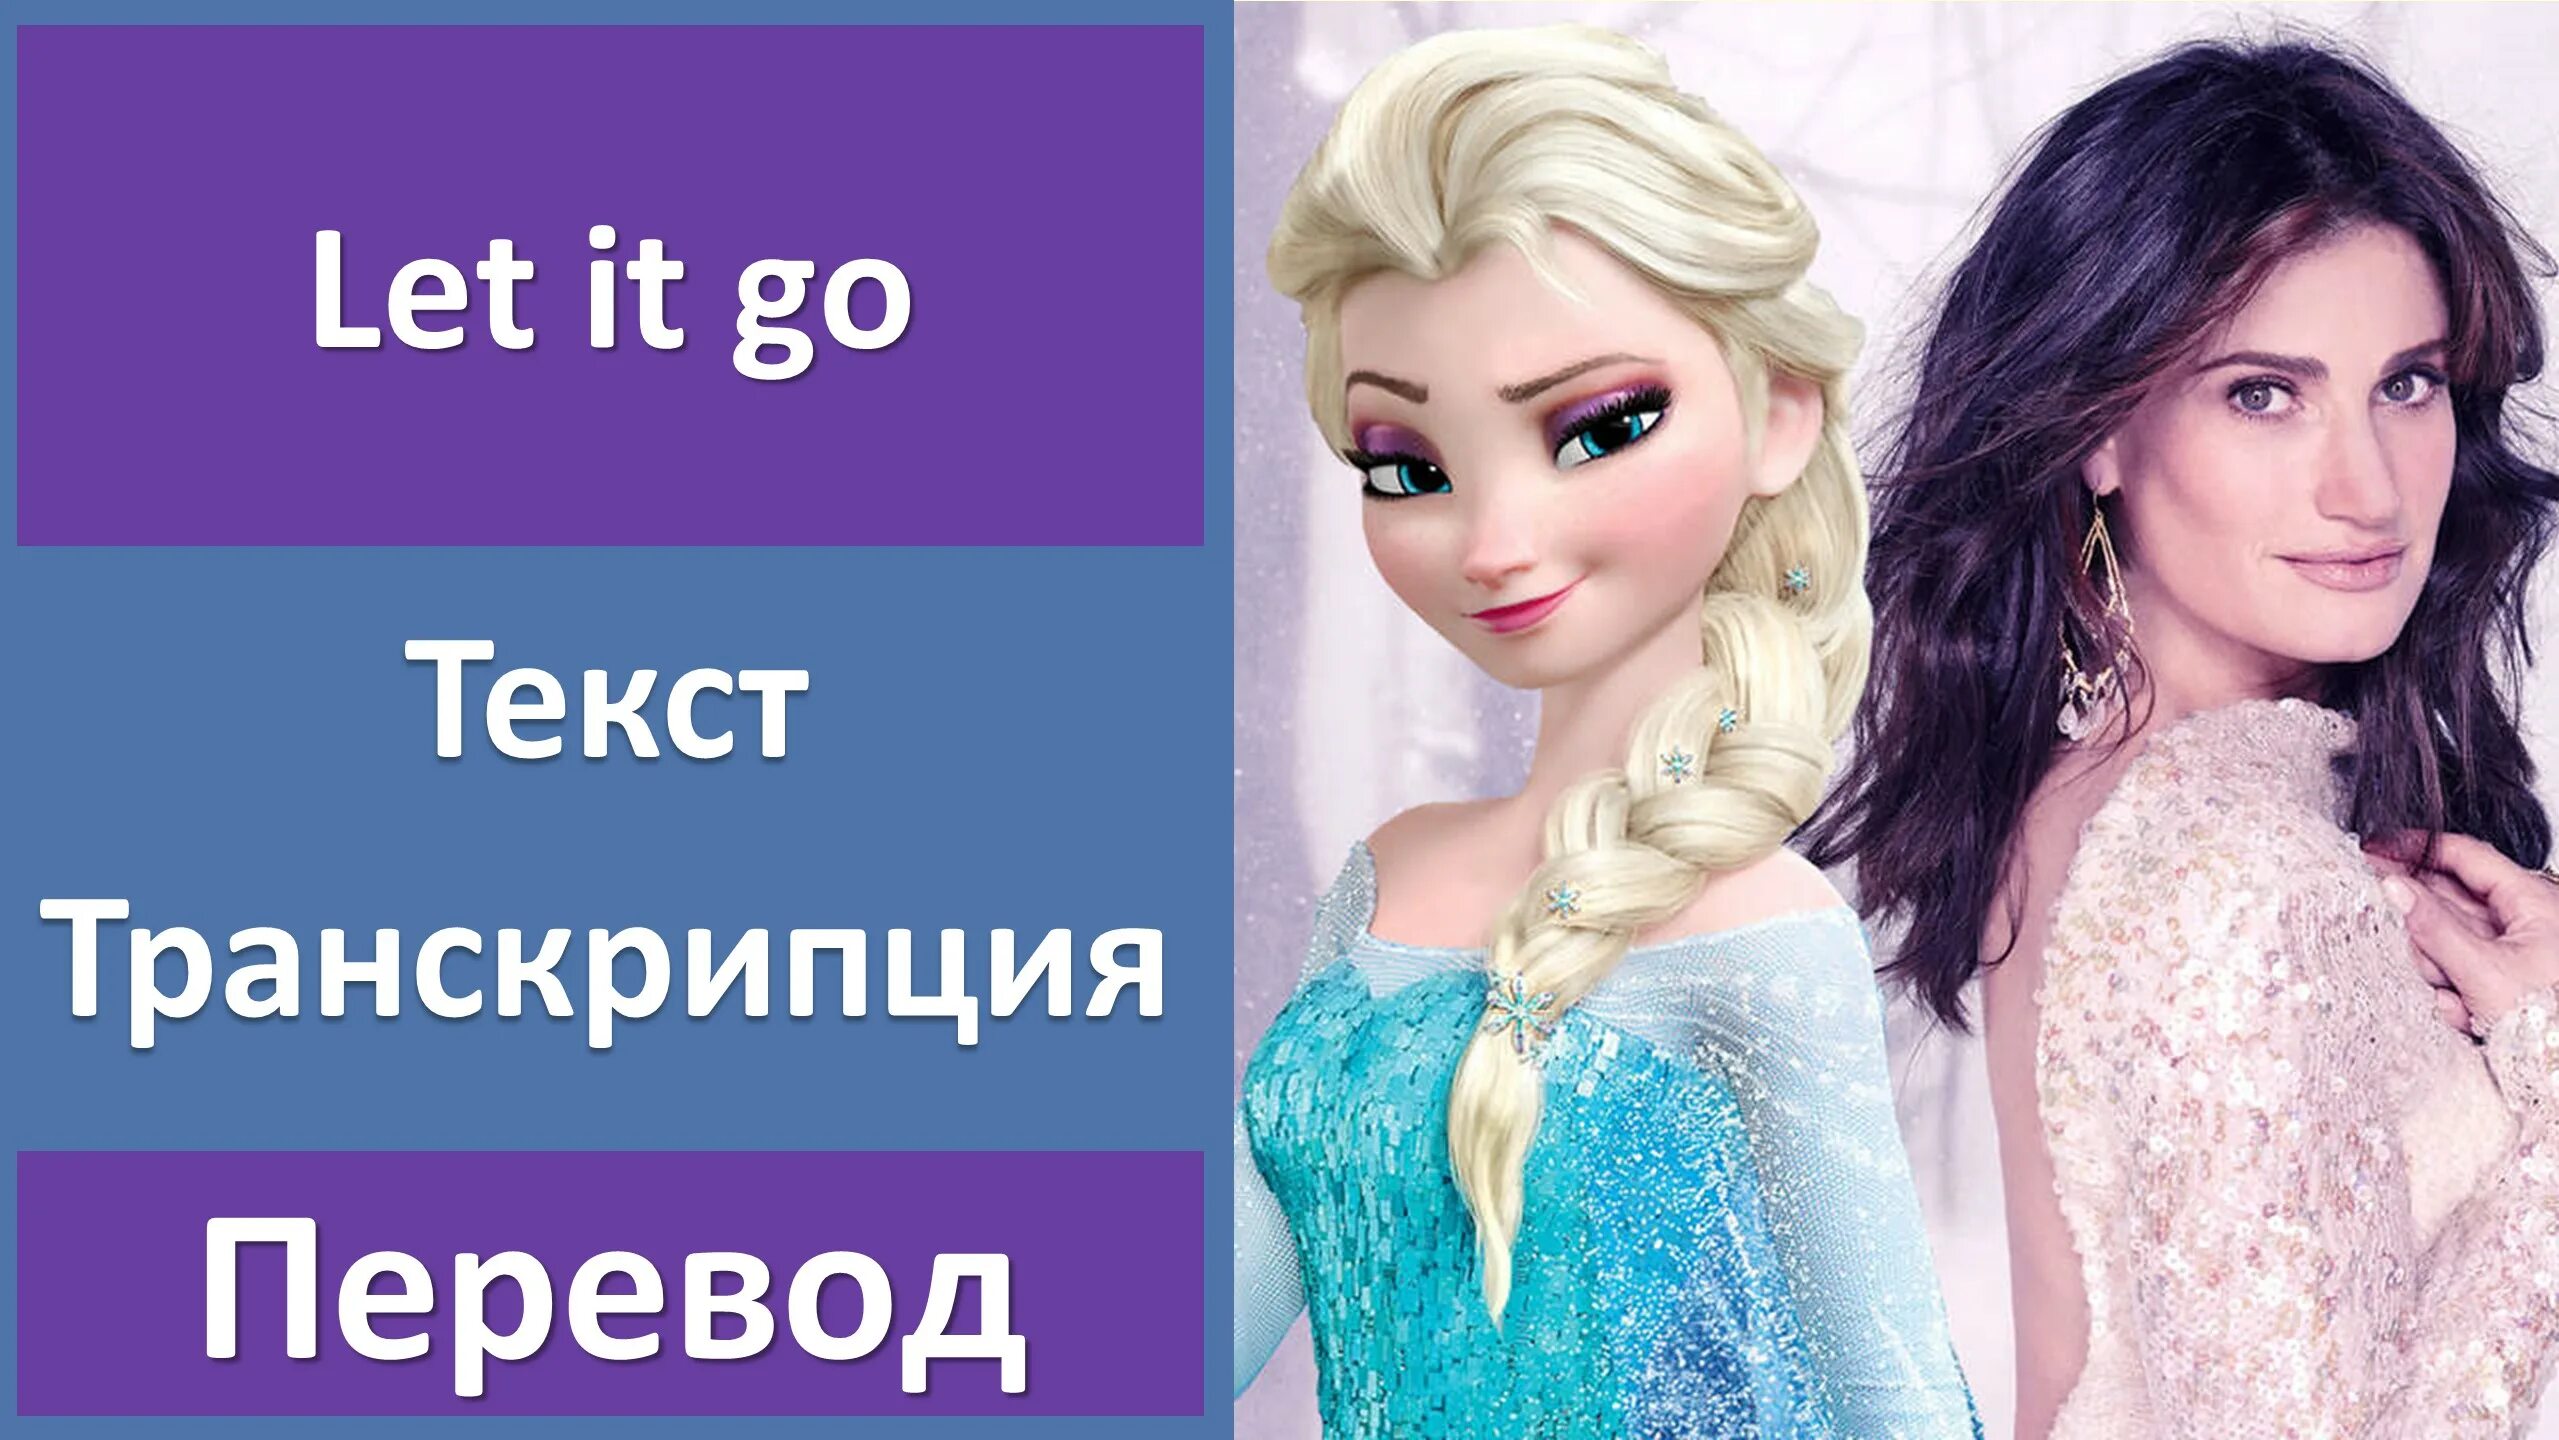 Frozen слова. Frozen - Idina Menzel - Let it go. Песня Эльзы текст. Песня Эльзы на английском. Let it go Frozen текст с переводом.